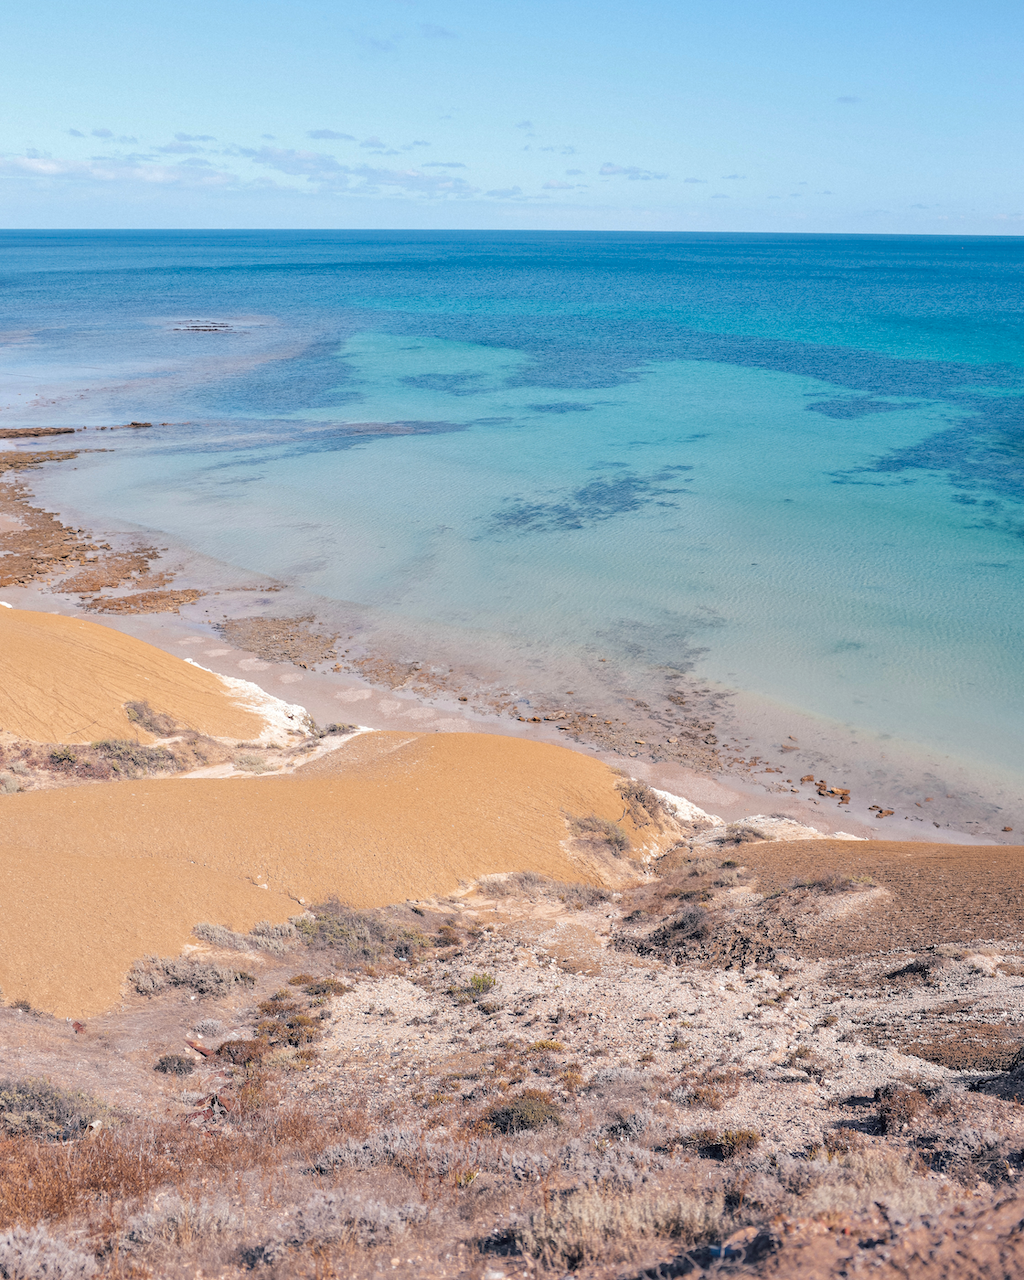 Jolie vue de la plage de Port Willunga - McLaren Vale - South Australia (SA) - Australie